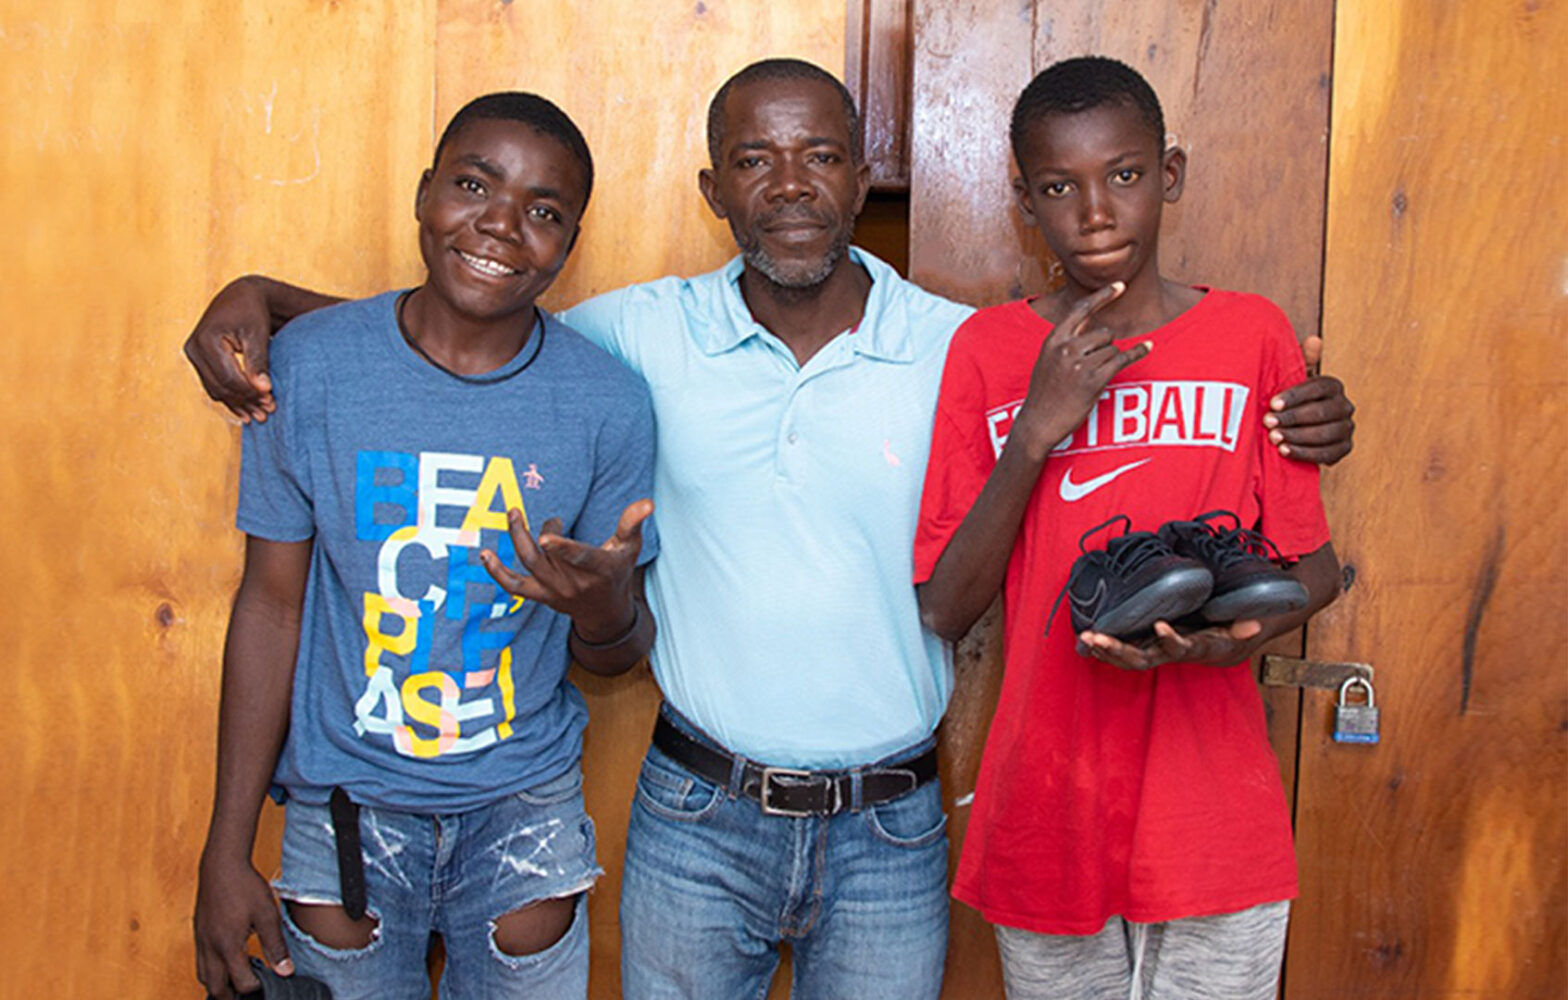 지역 사회에서 일어난 무력 충돌에서 도망친 아이티 어린이 2명이 아가페에서 환영 받다